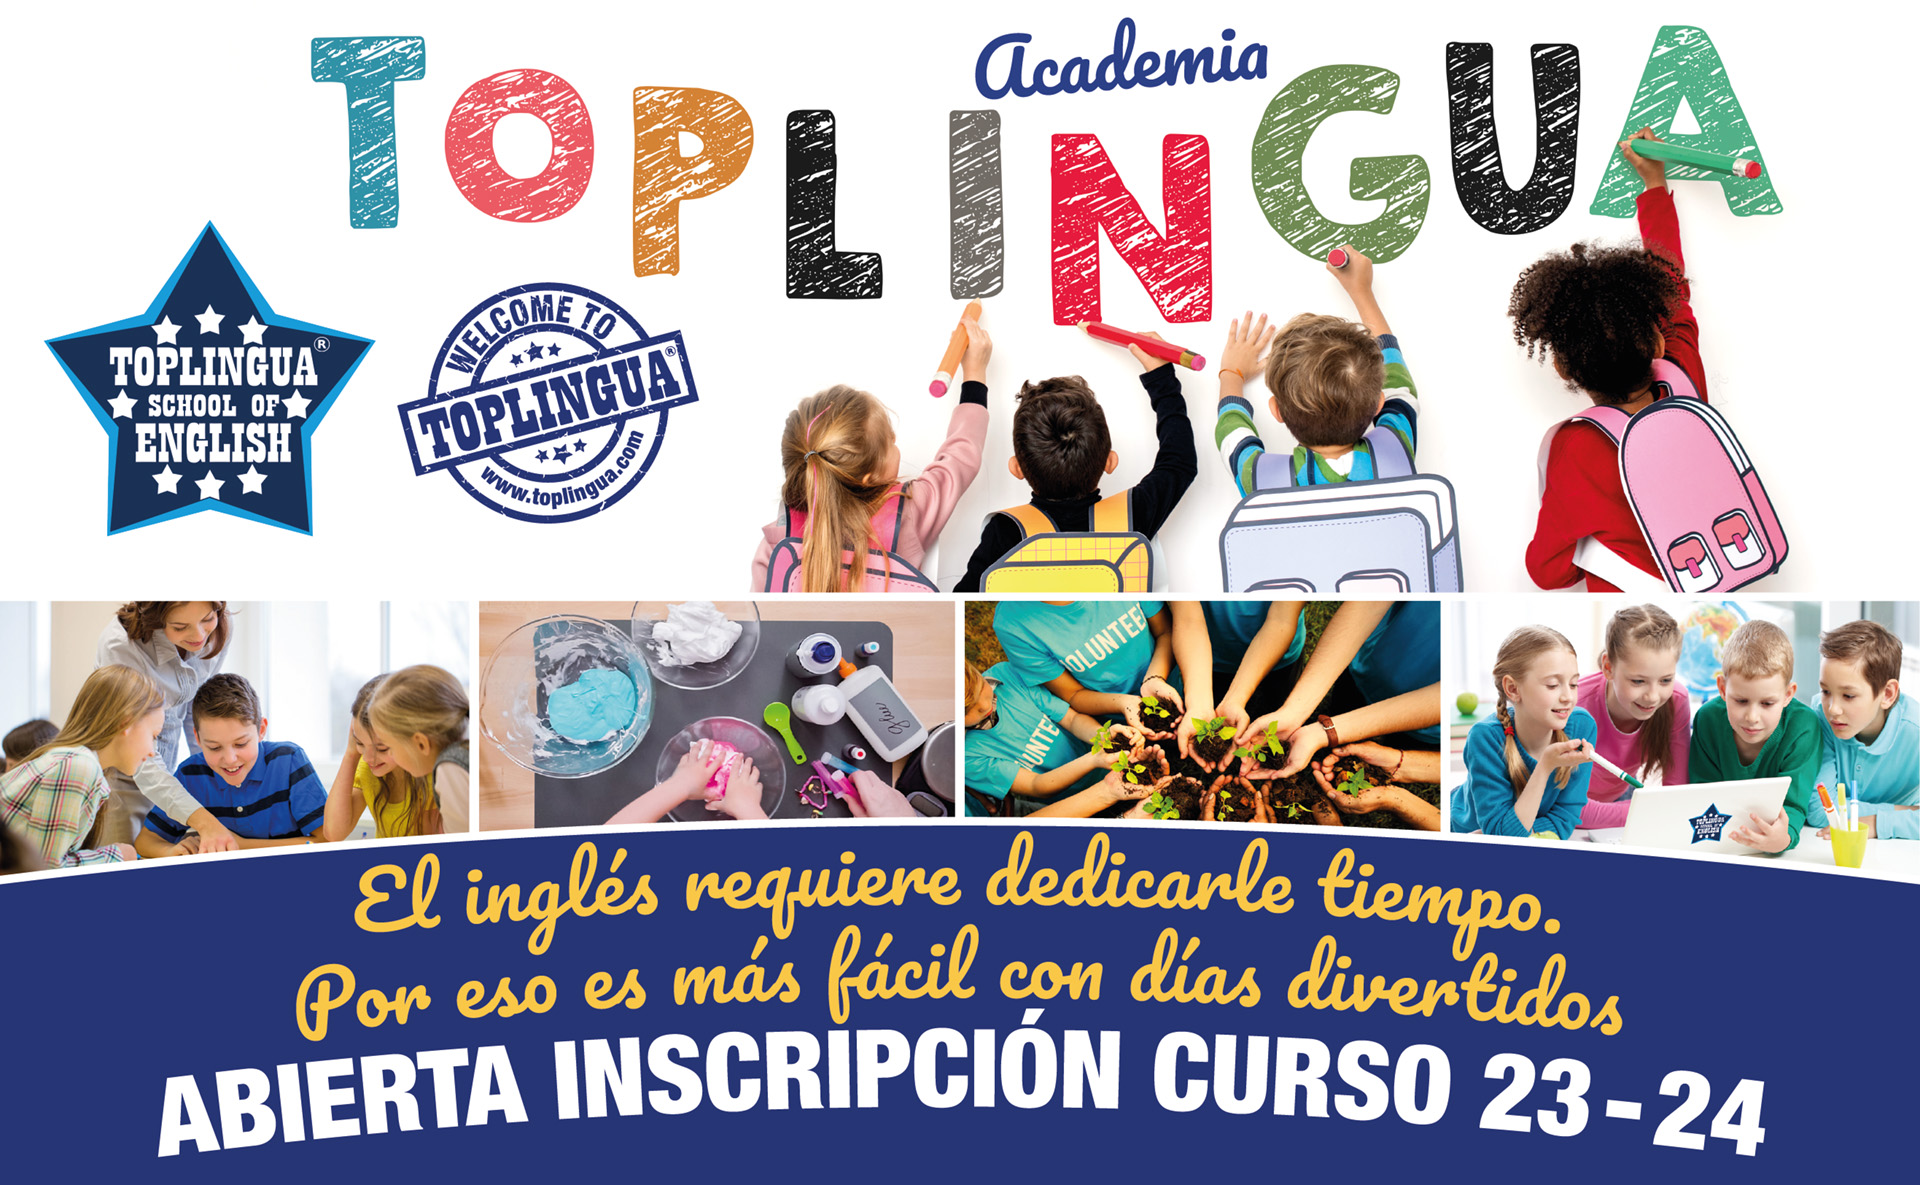 Abierto el plazo de matricula de inglés para niños en San Fernando, en la academia Toplingua